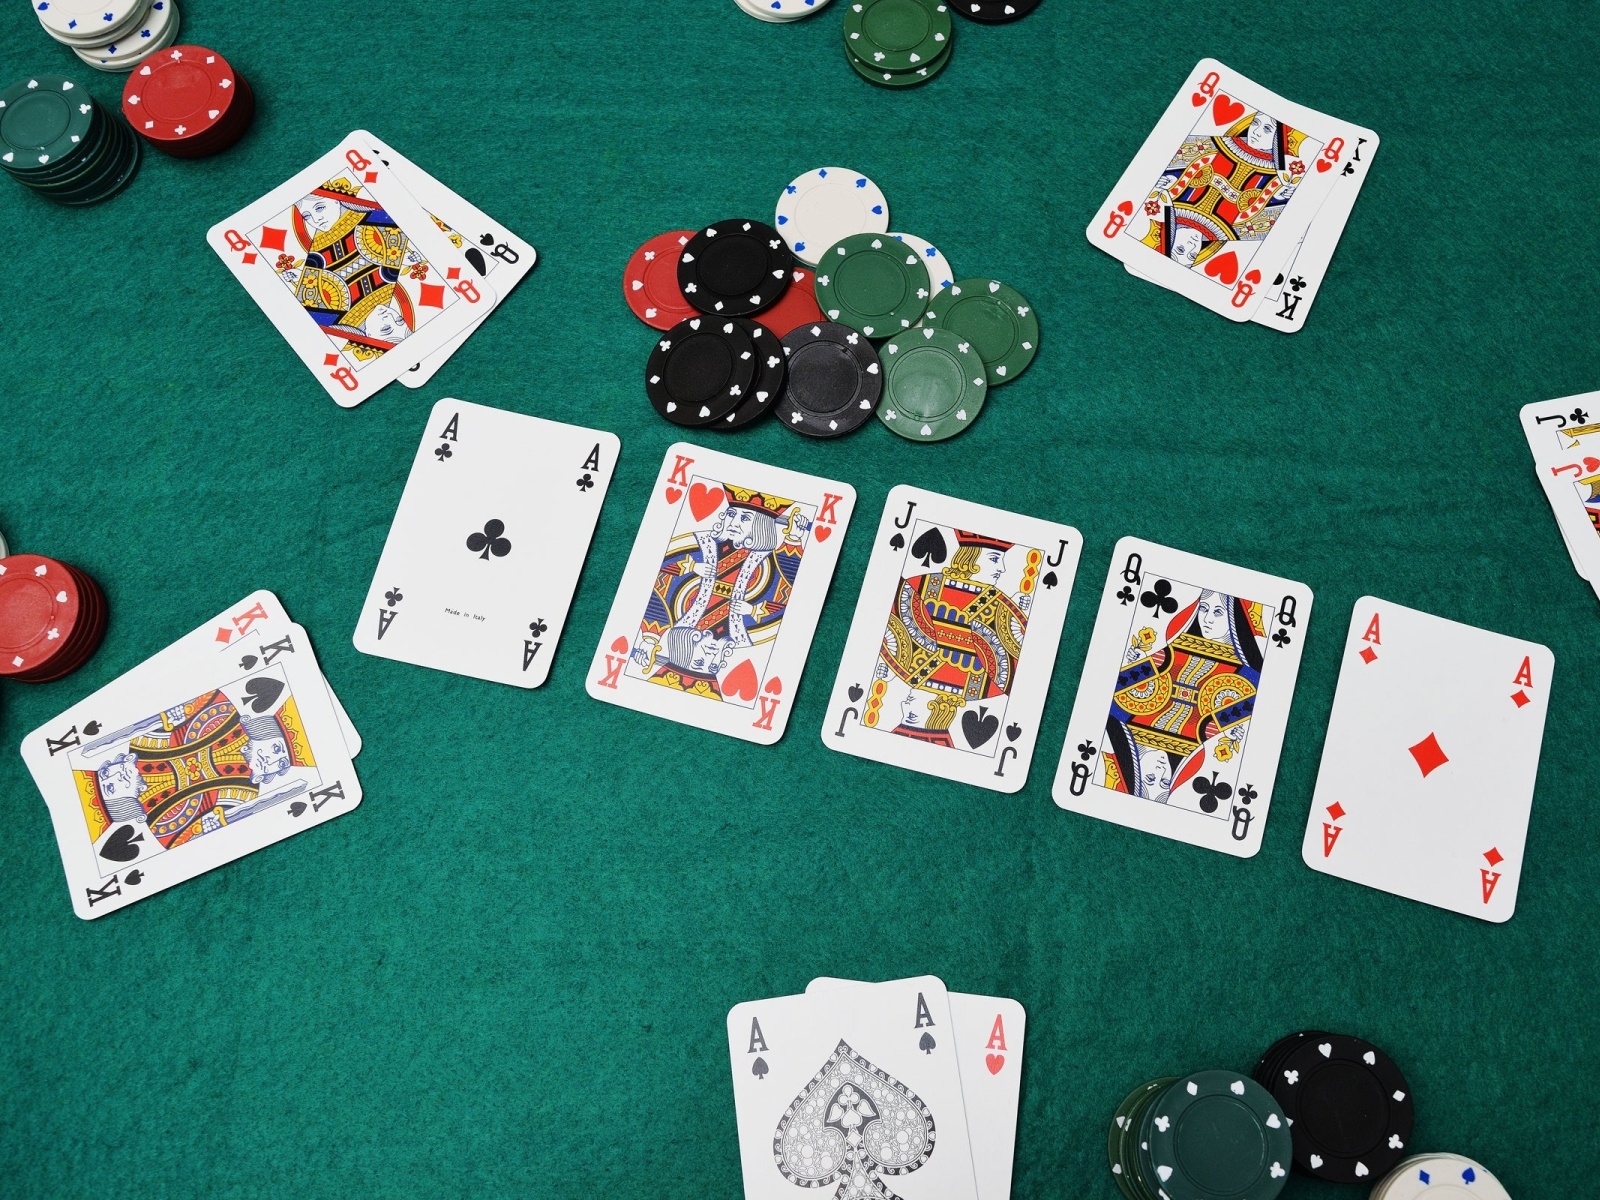 So bài poker: Chiến thuật hạ gục đối thủ trong trò chơi poker